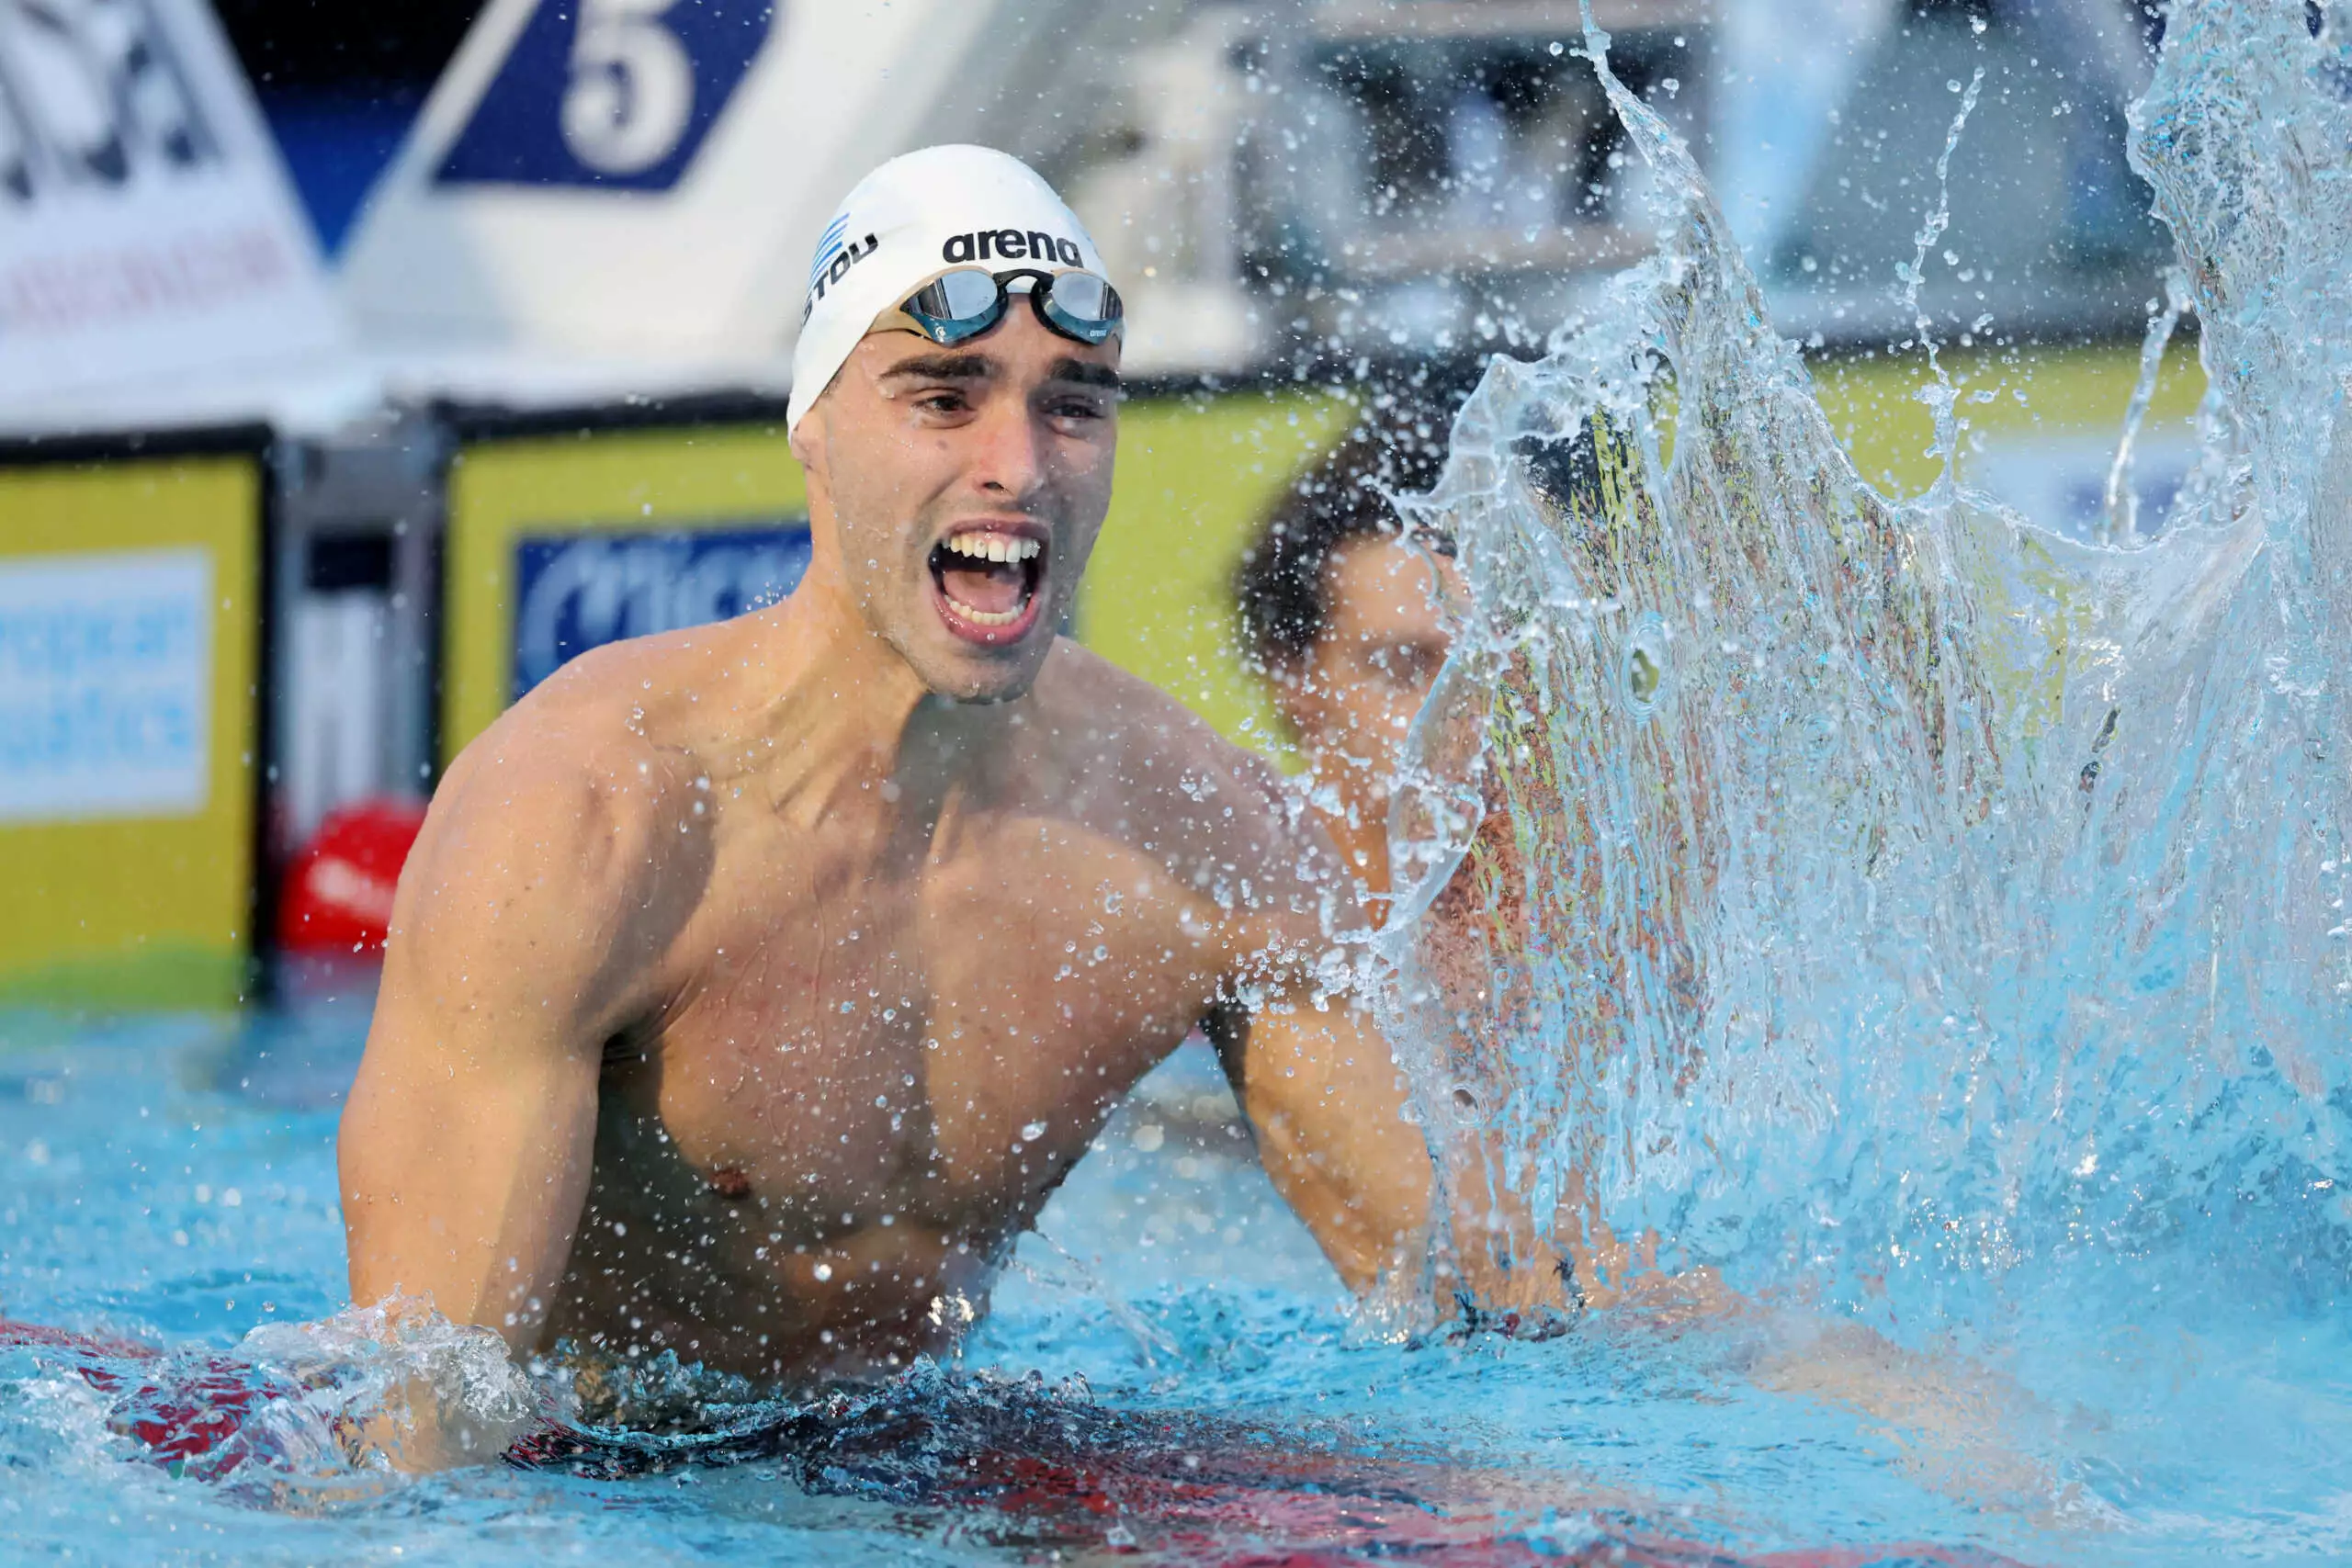 Απόστολος Χρήστου: Έφερε νέο μετάλλιο στην Ελλάδα – Κατέκτησε την 3η θέση στο παγκόσμιο πρωτάθλημα κολύμβησης